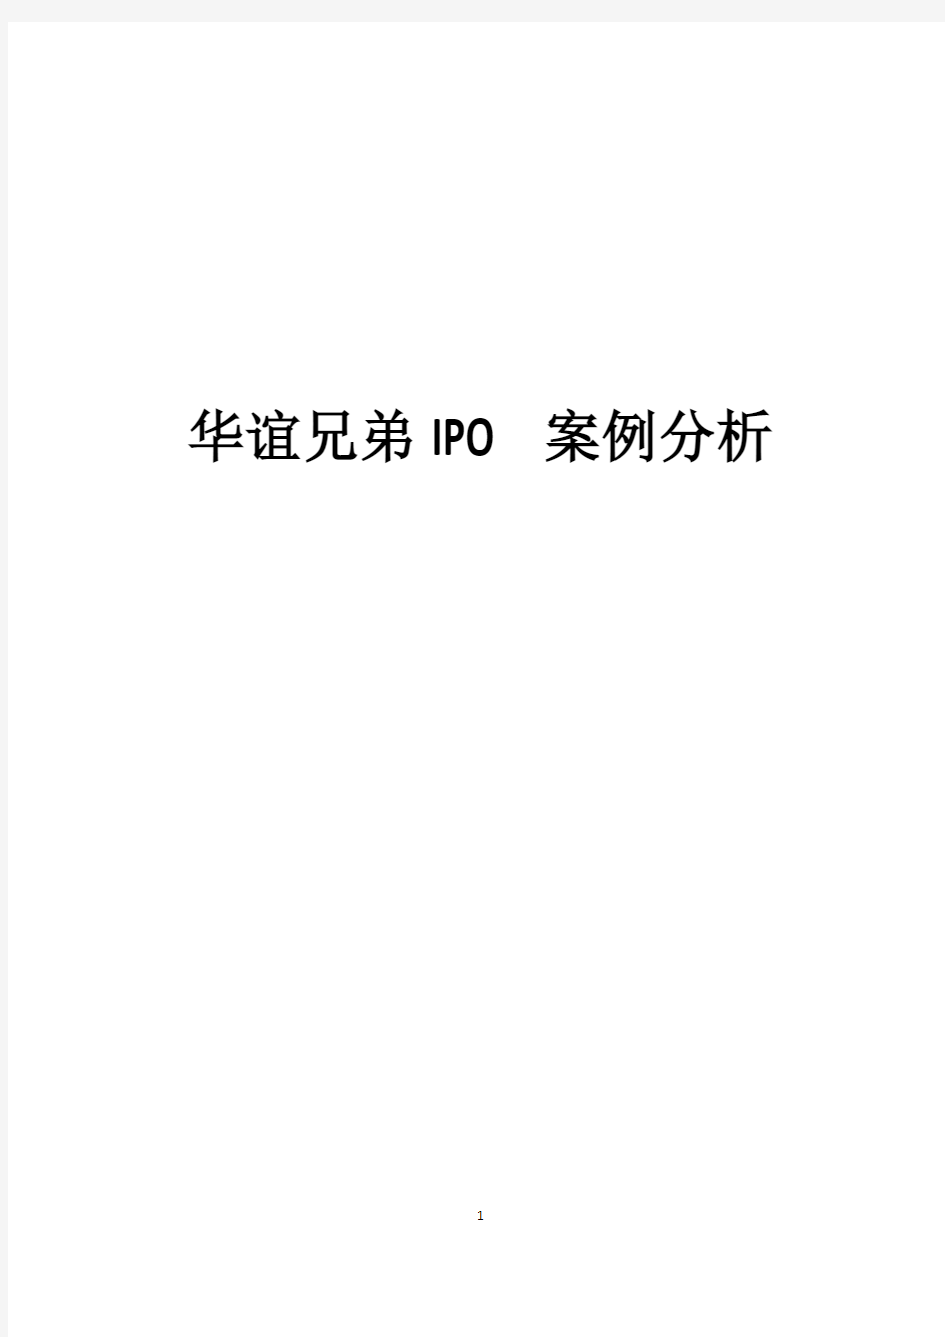 华谊兄弟IPO案例分析